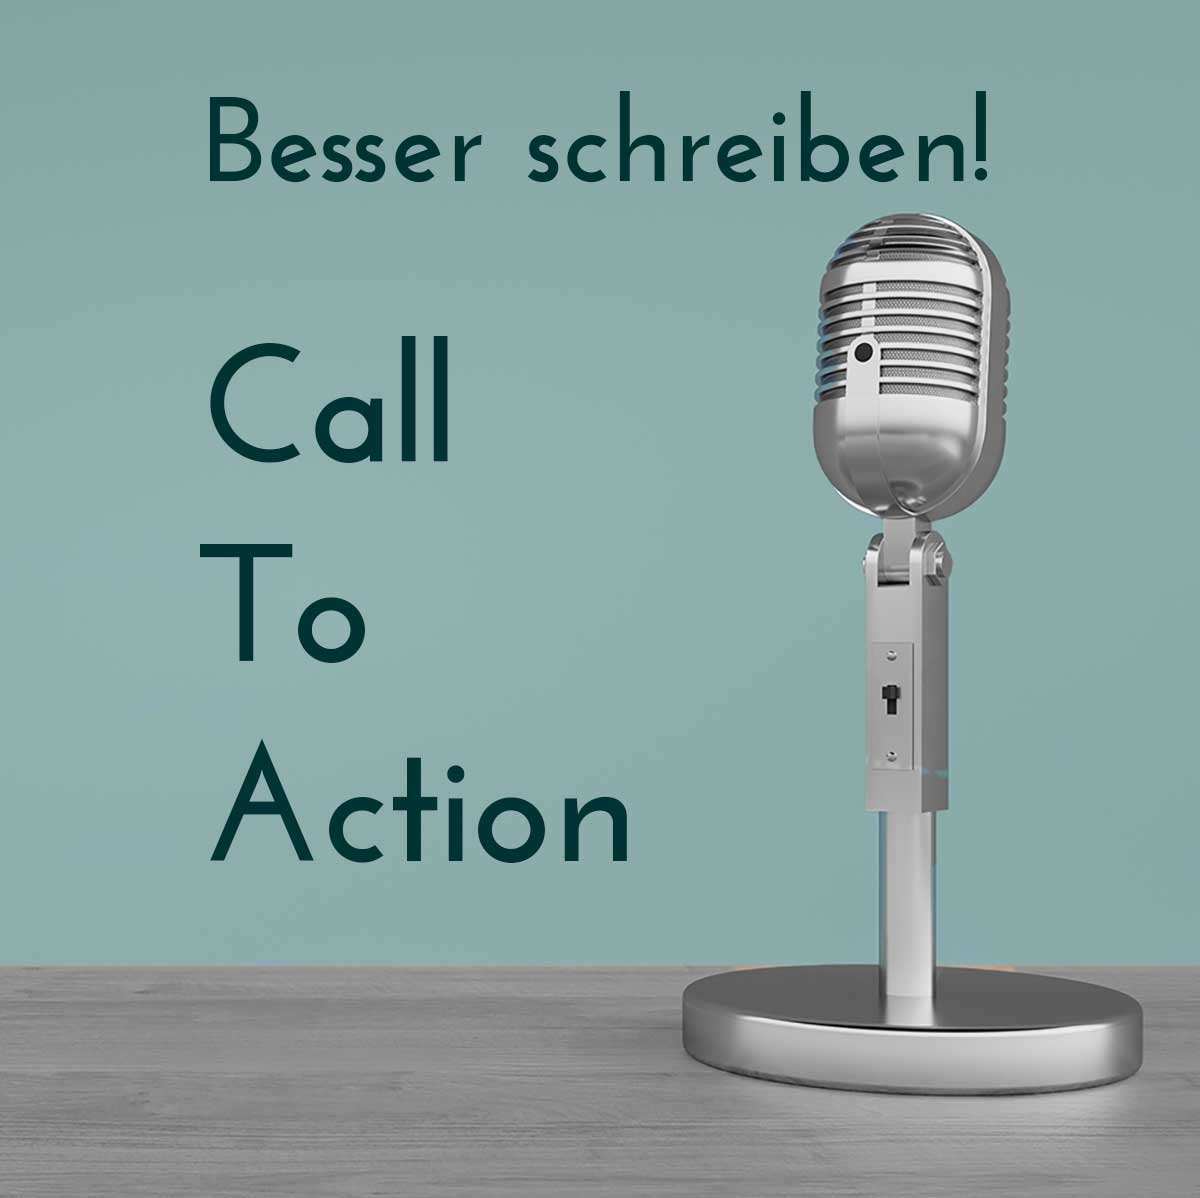 Call to Action - ohne den verkaufst du nix